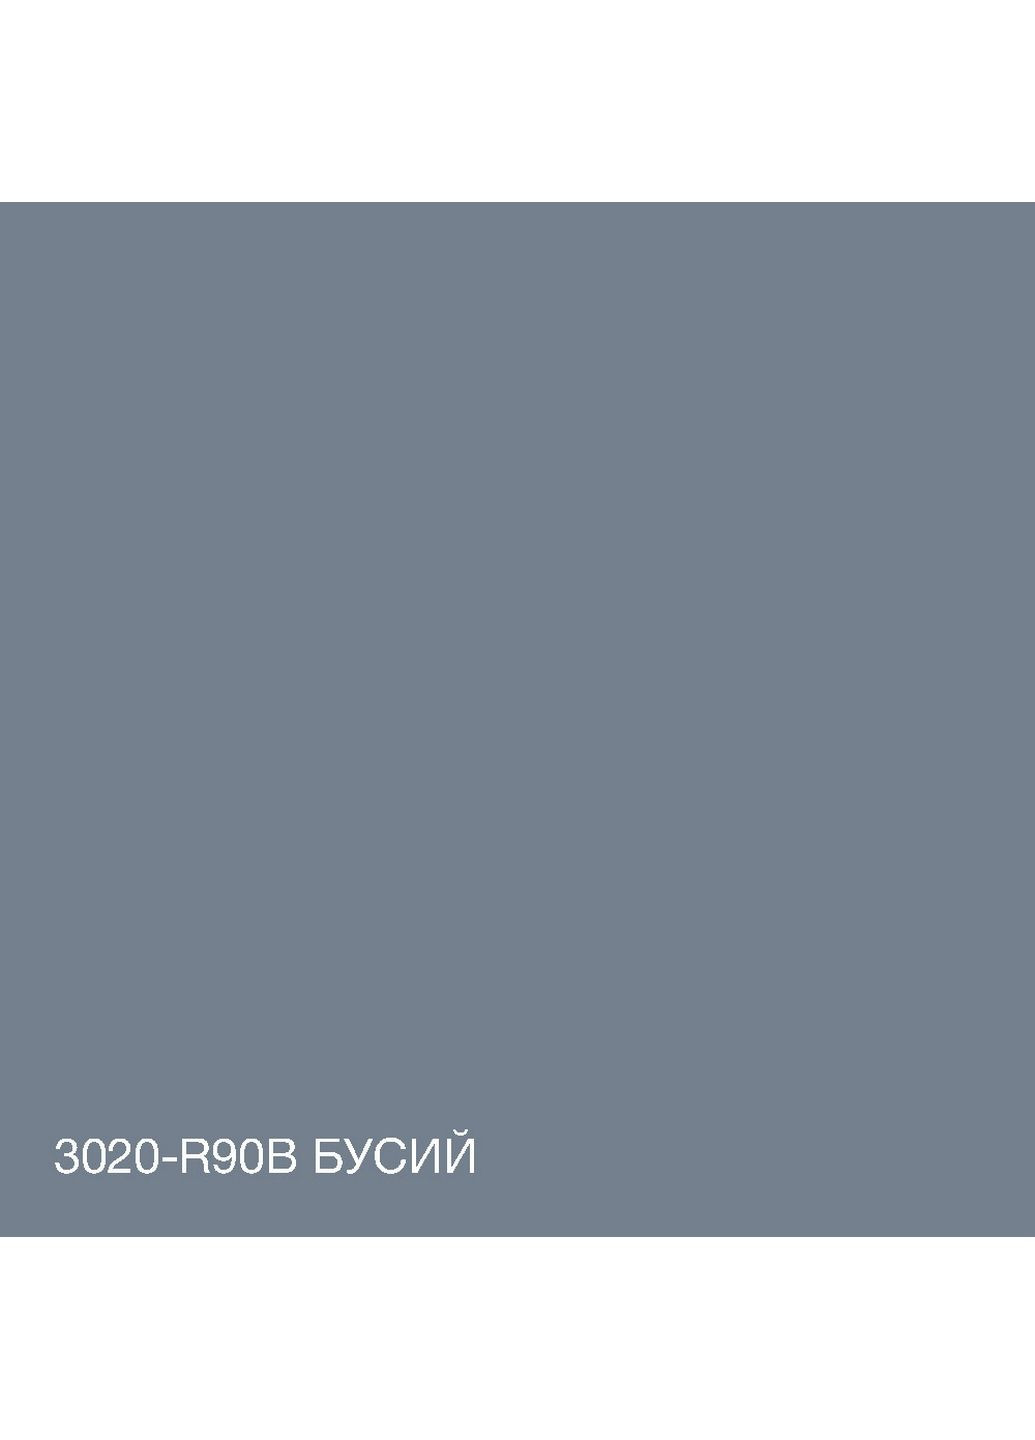 Интерьерная латексная краска 3020-R90B 10 л SkyLine (283326633)